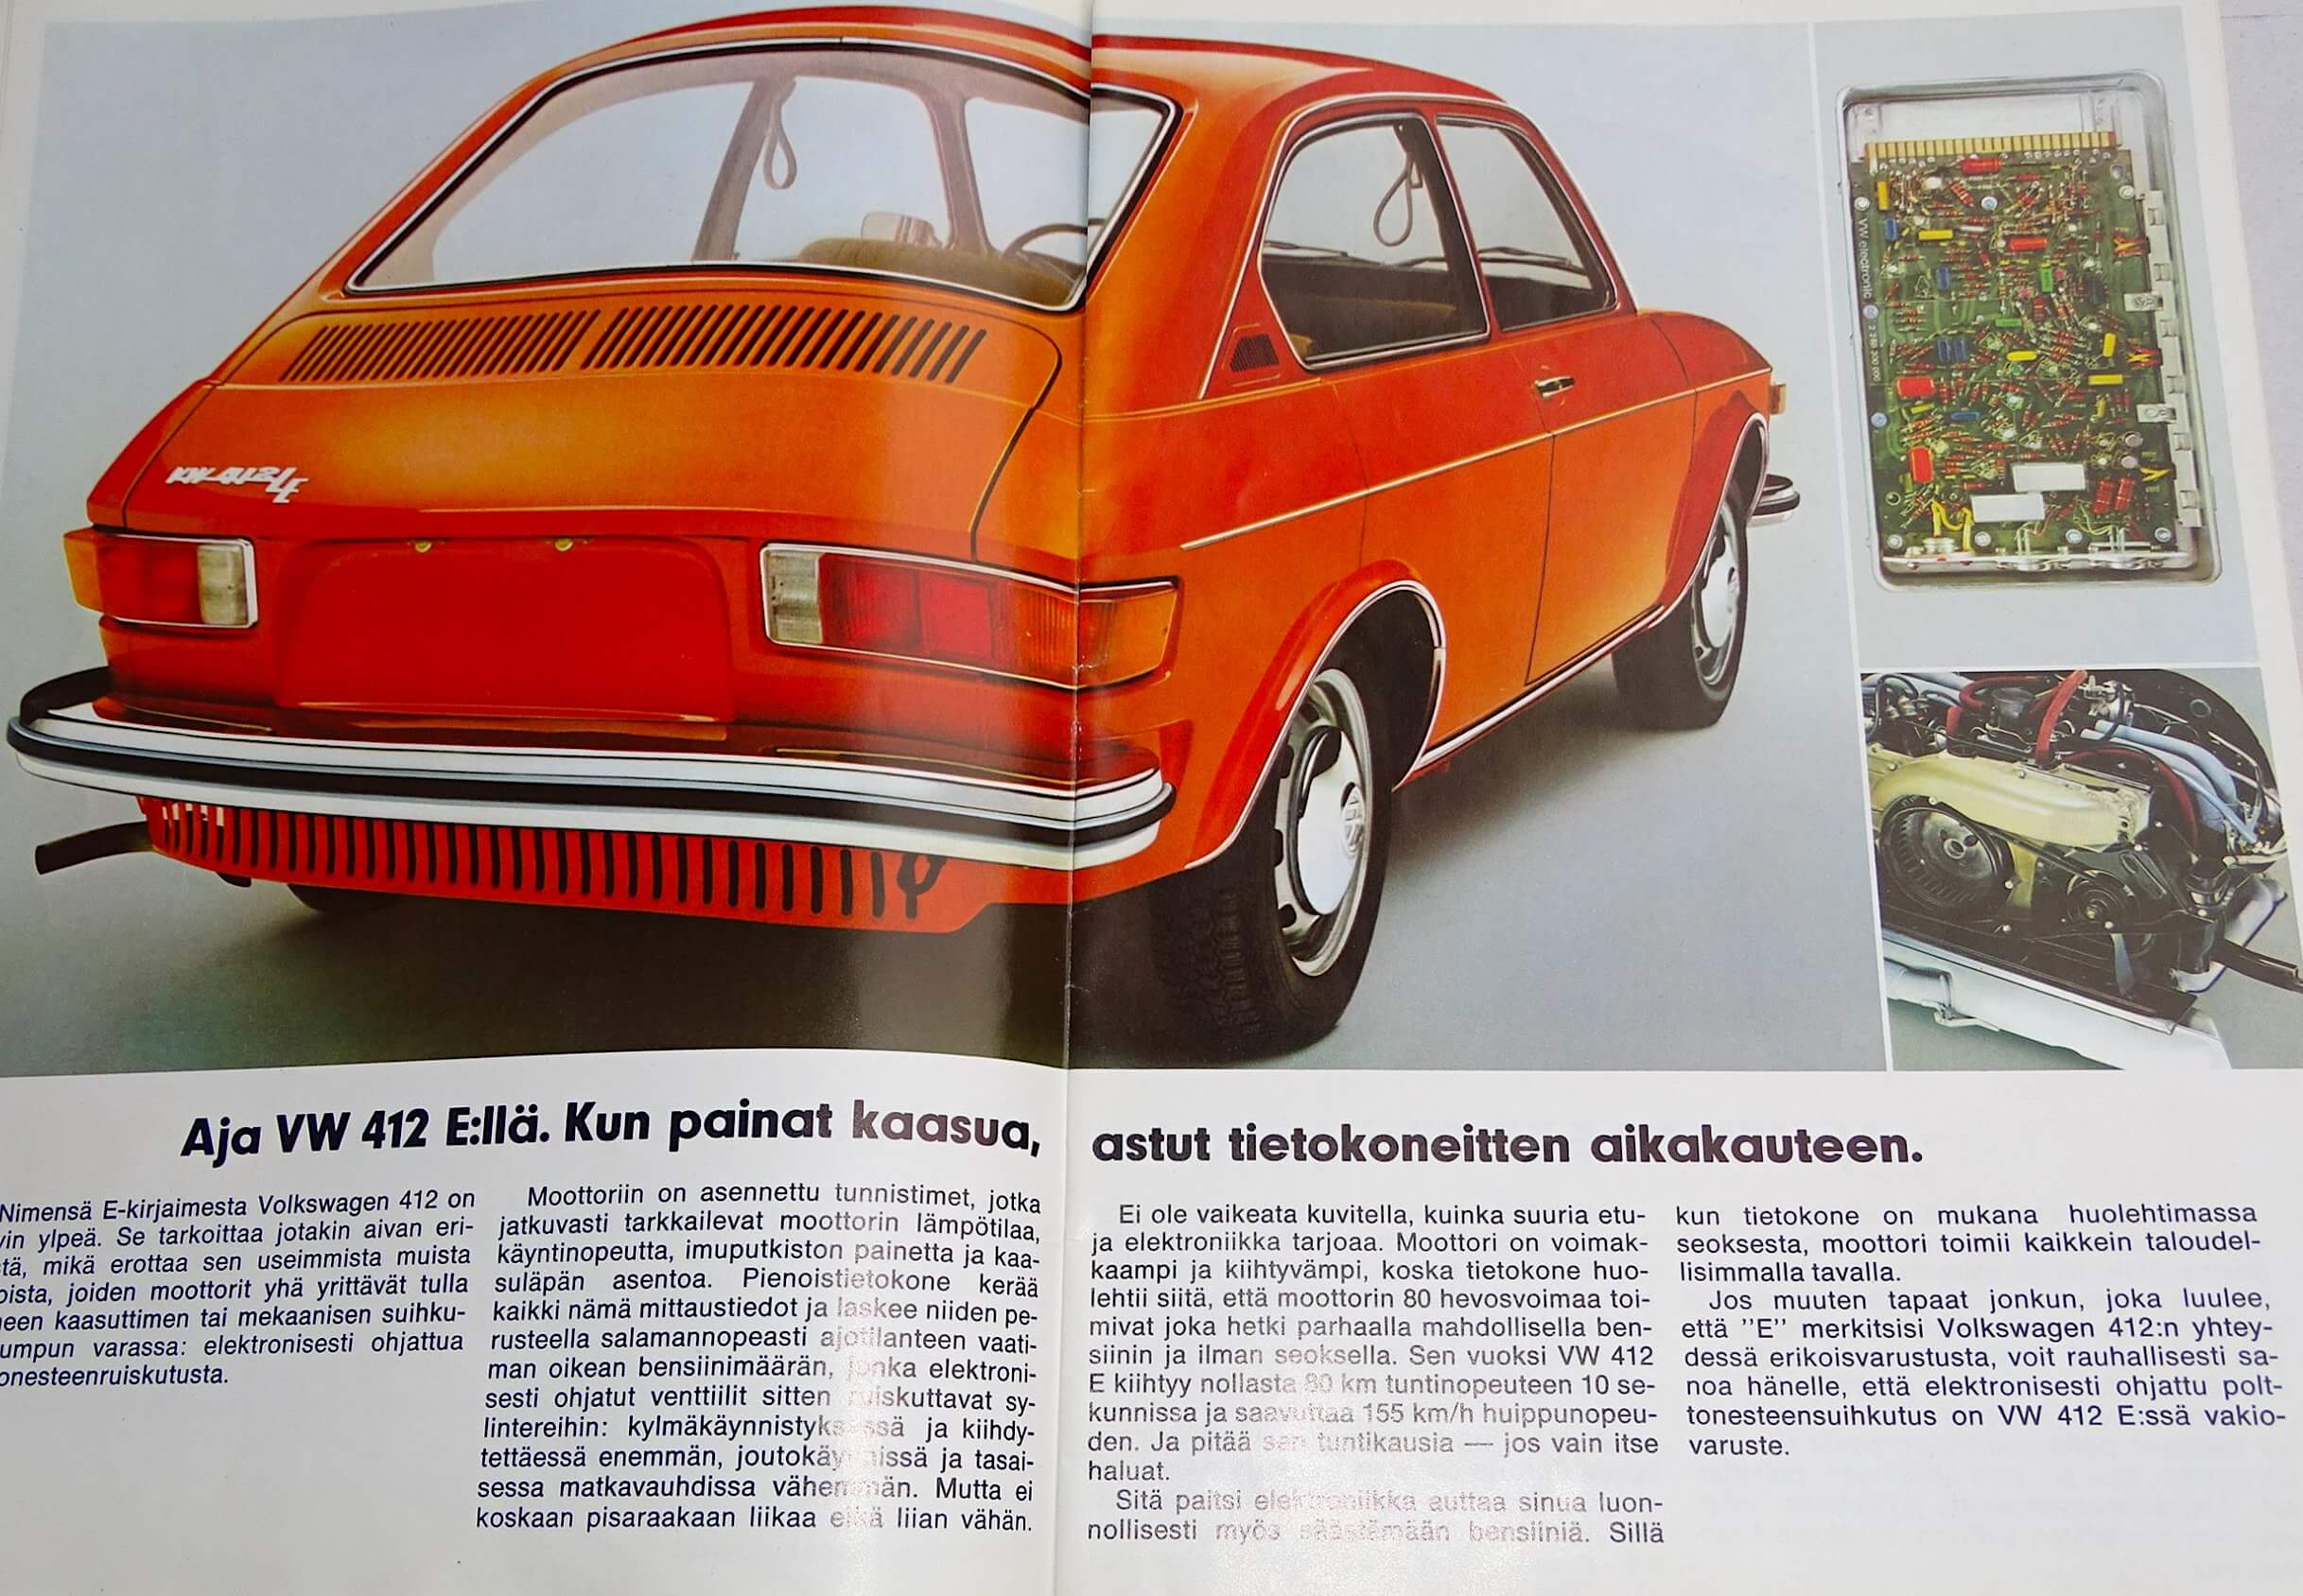 1973 VW412LE käyttöohjekirja. Kuva ja copyright: VW/Allegro Archives.